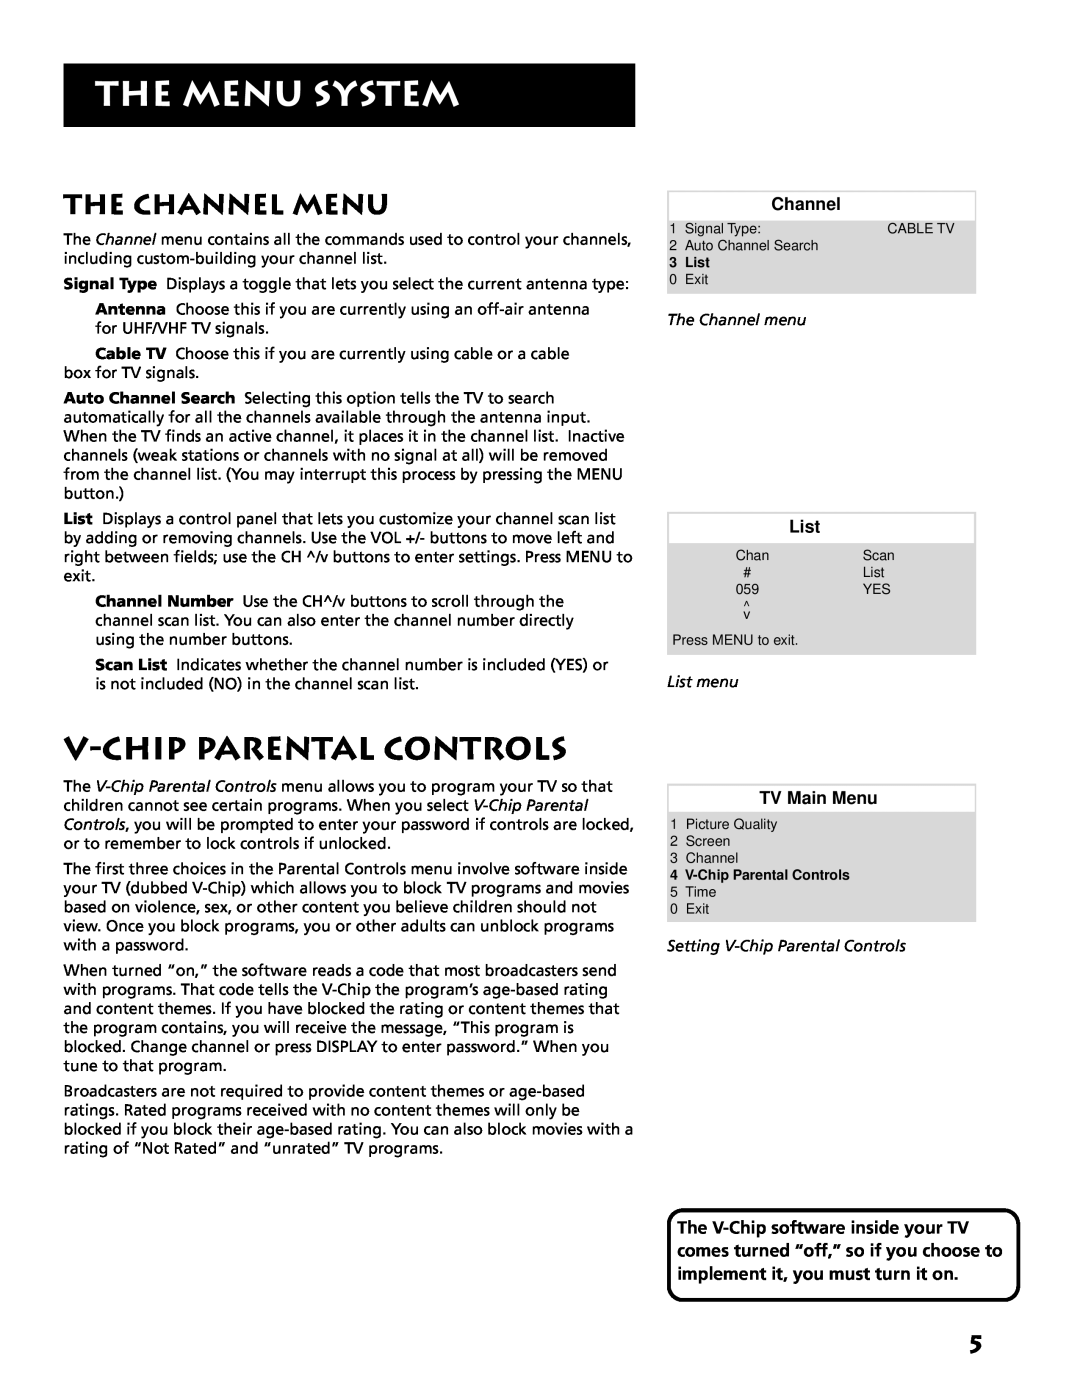 RCA E13319 V-Chip Parental Controls, The Channel Menu, The Menu System, TV Main Menu, The Channel menu, List menu 